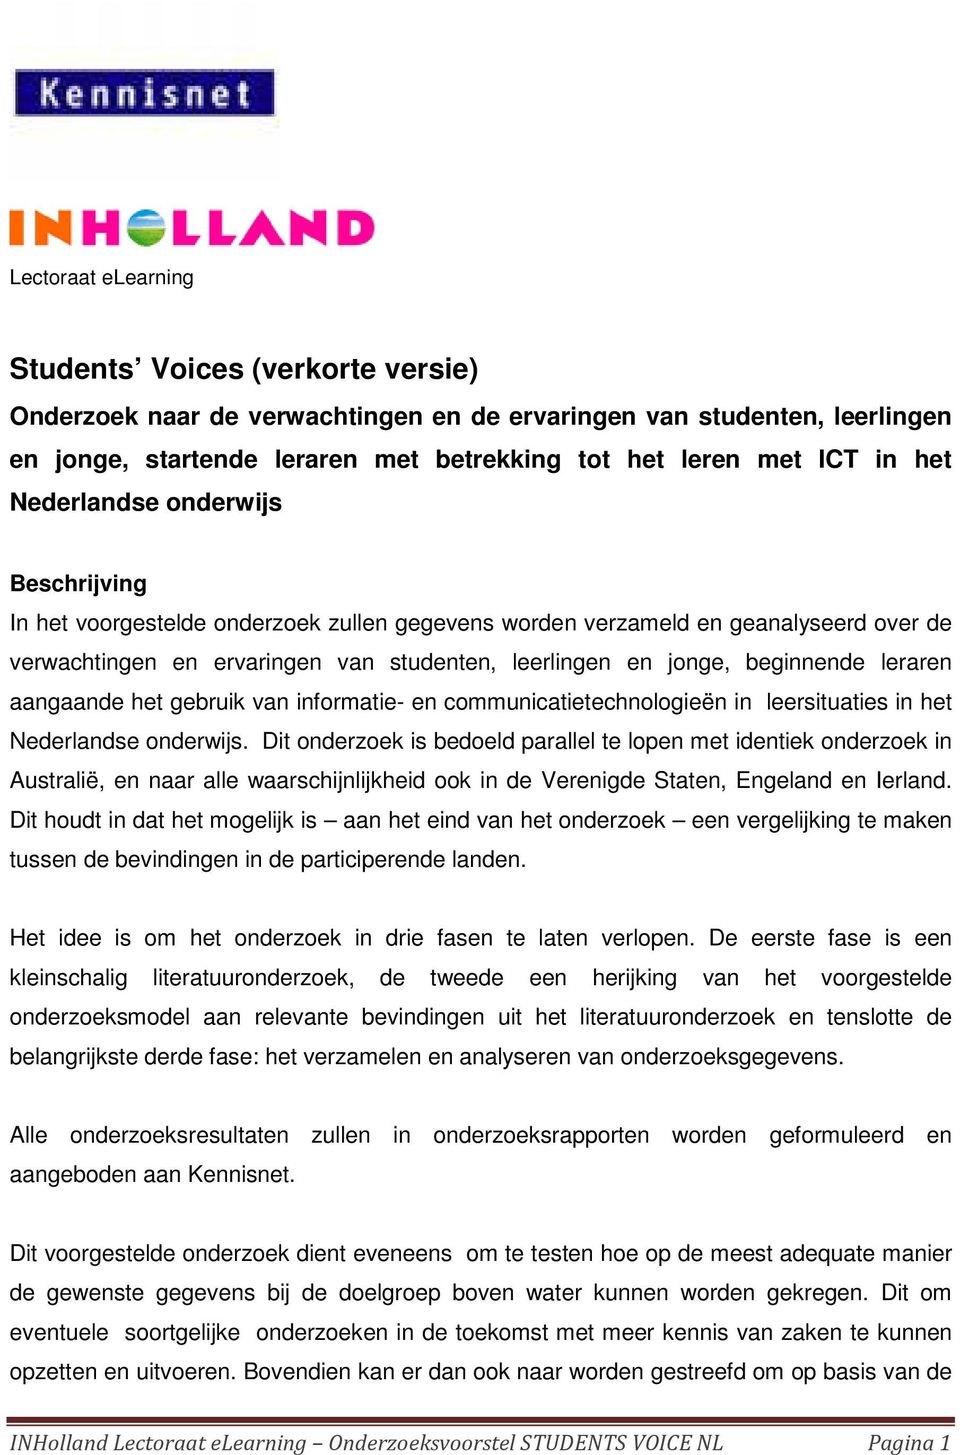 beginnende leraren aangaande het gebruik van informatie- en communicatietechnologieën in leersituaties in het Nederlandse onderwijs.